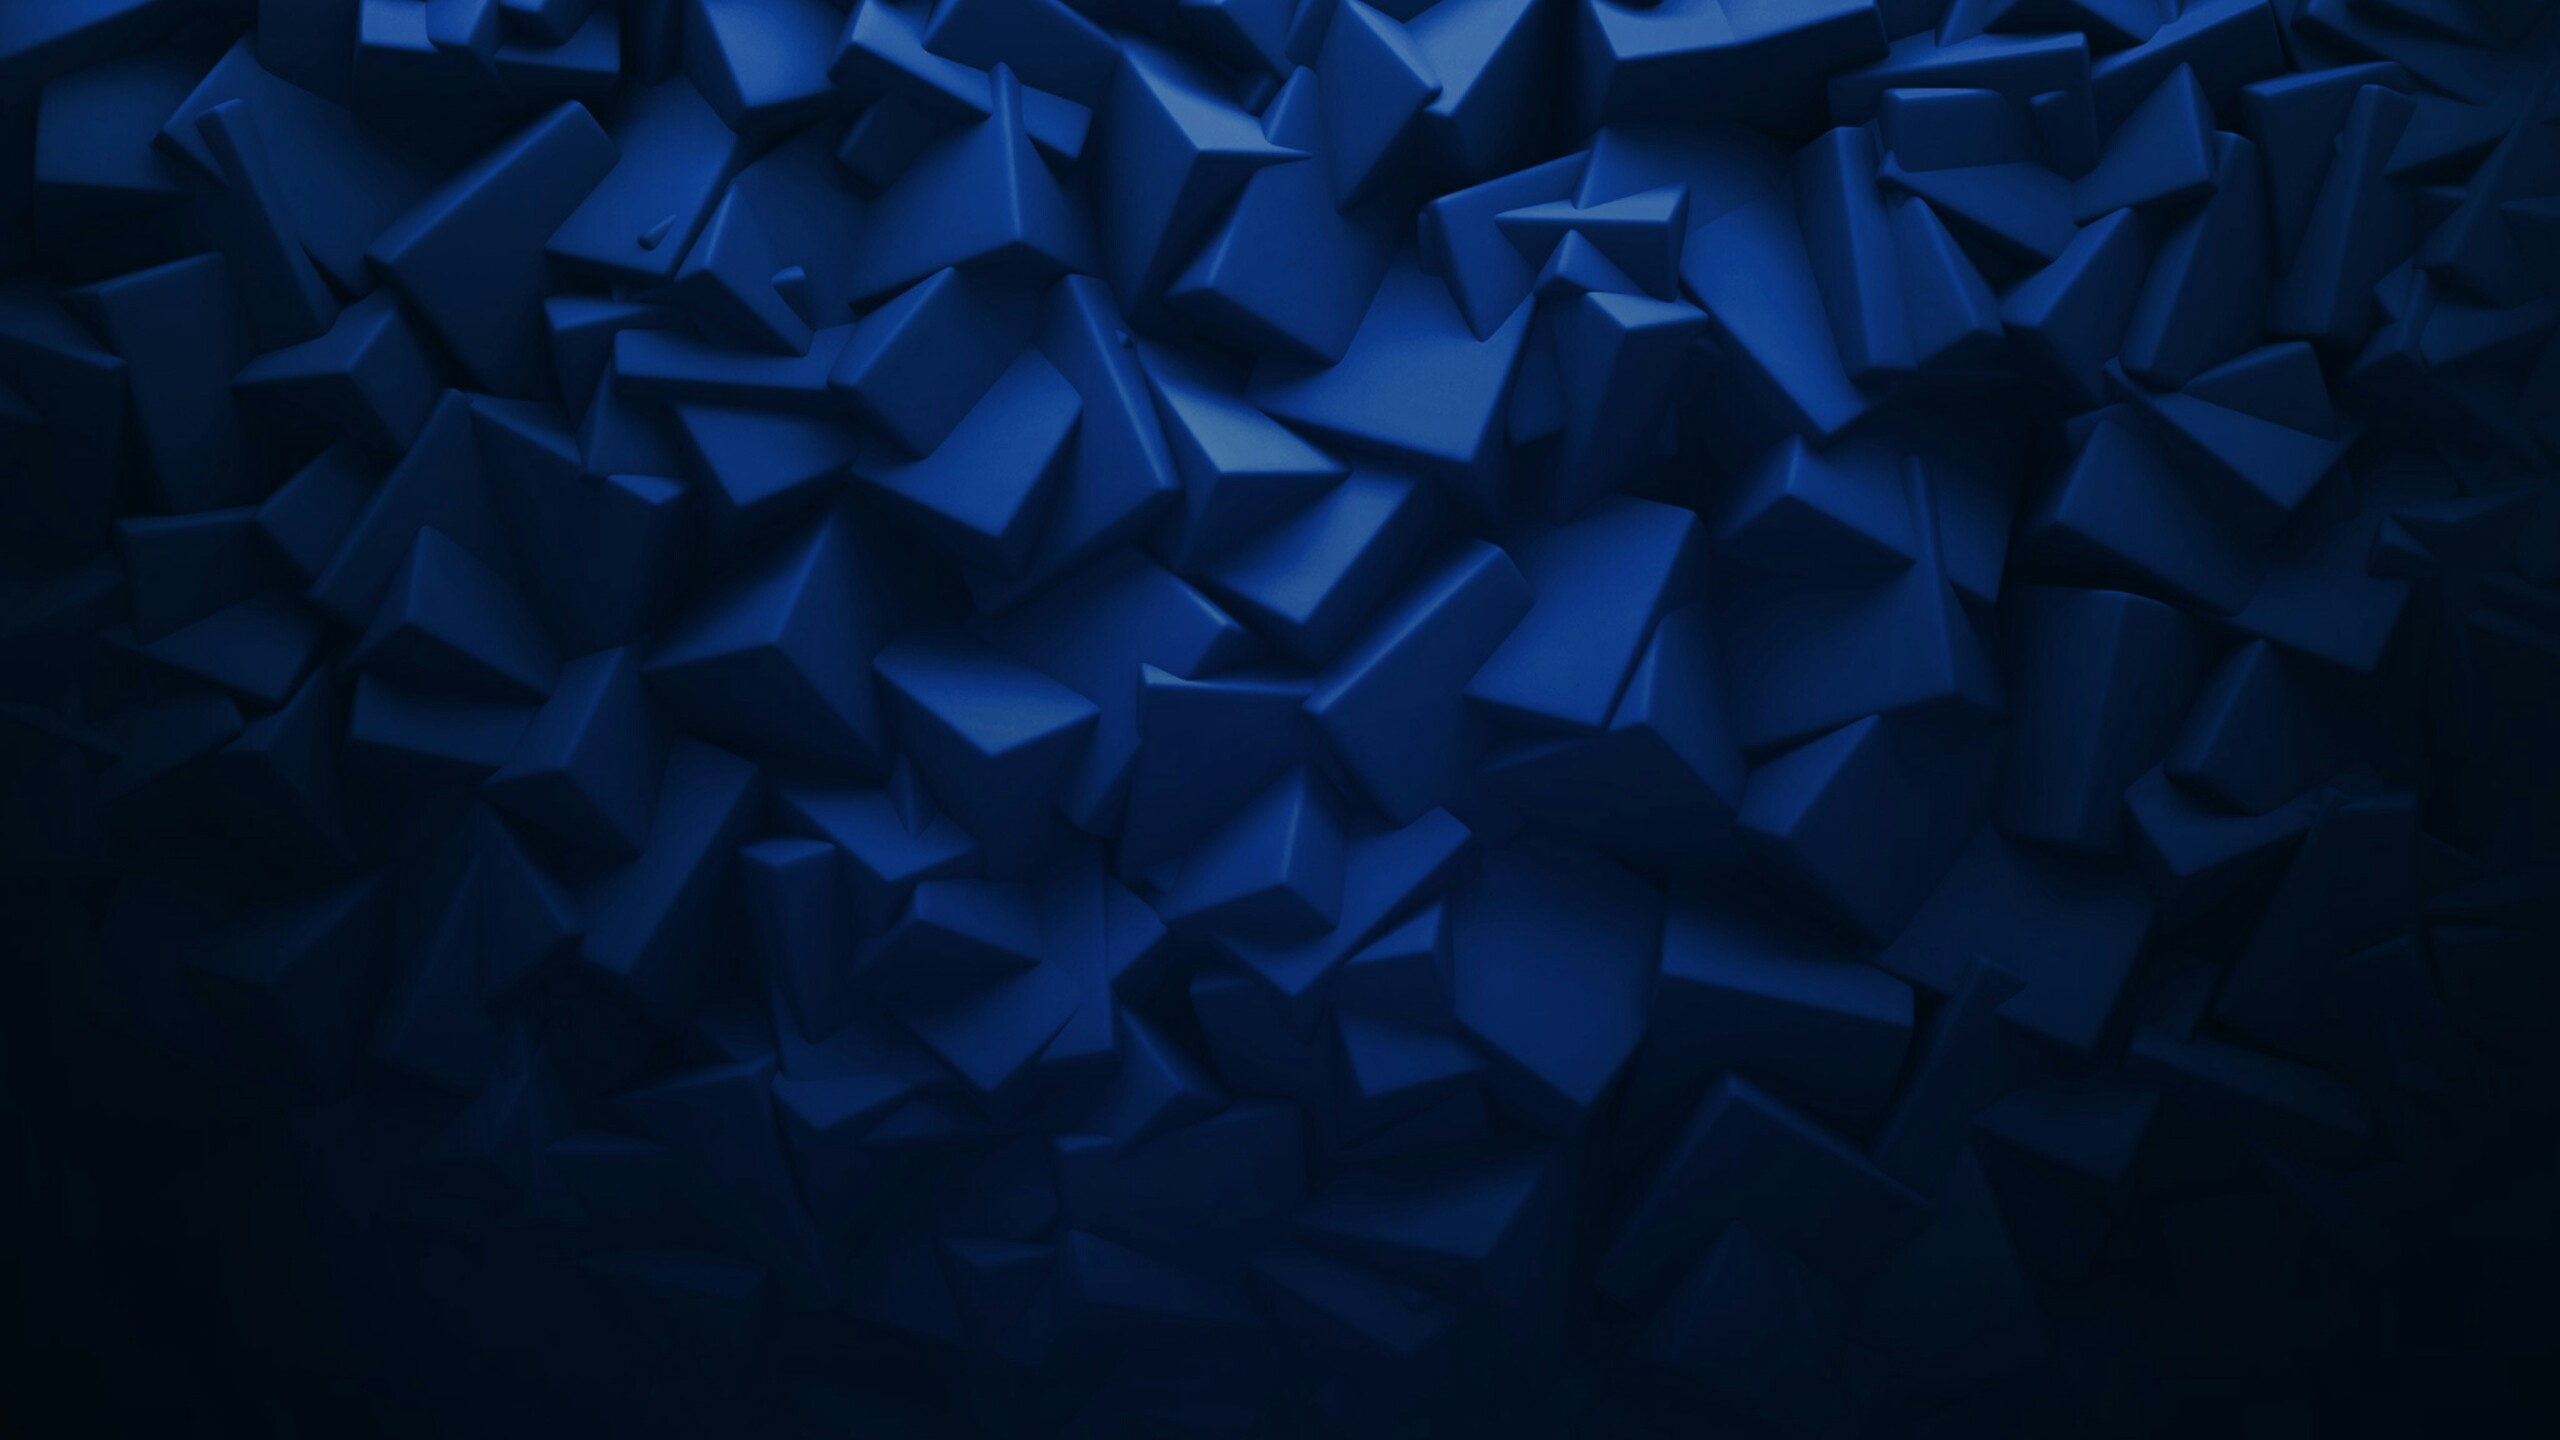 黑色的, 电蓝色的, Azure, 像素, 浅蓝色的 壁纸 2560x1440 允许